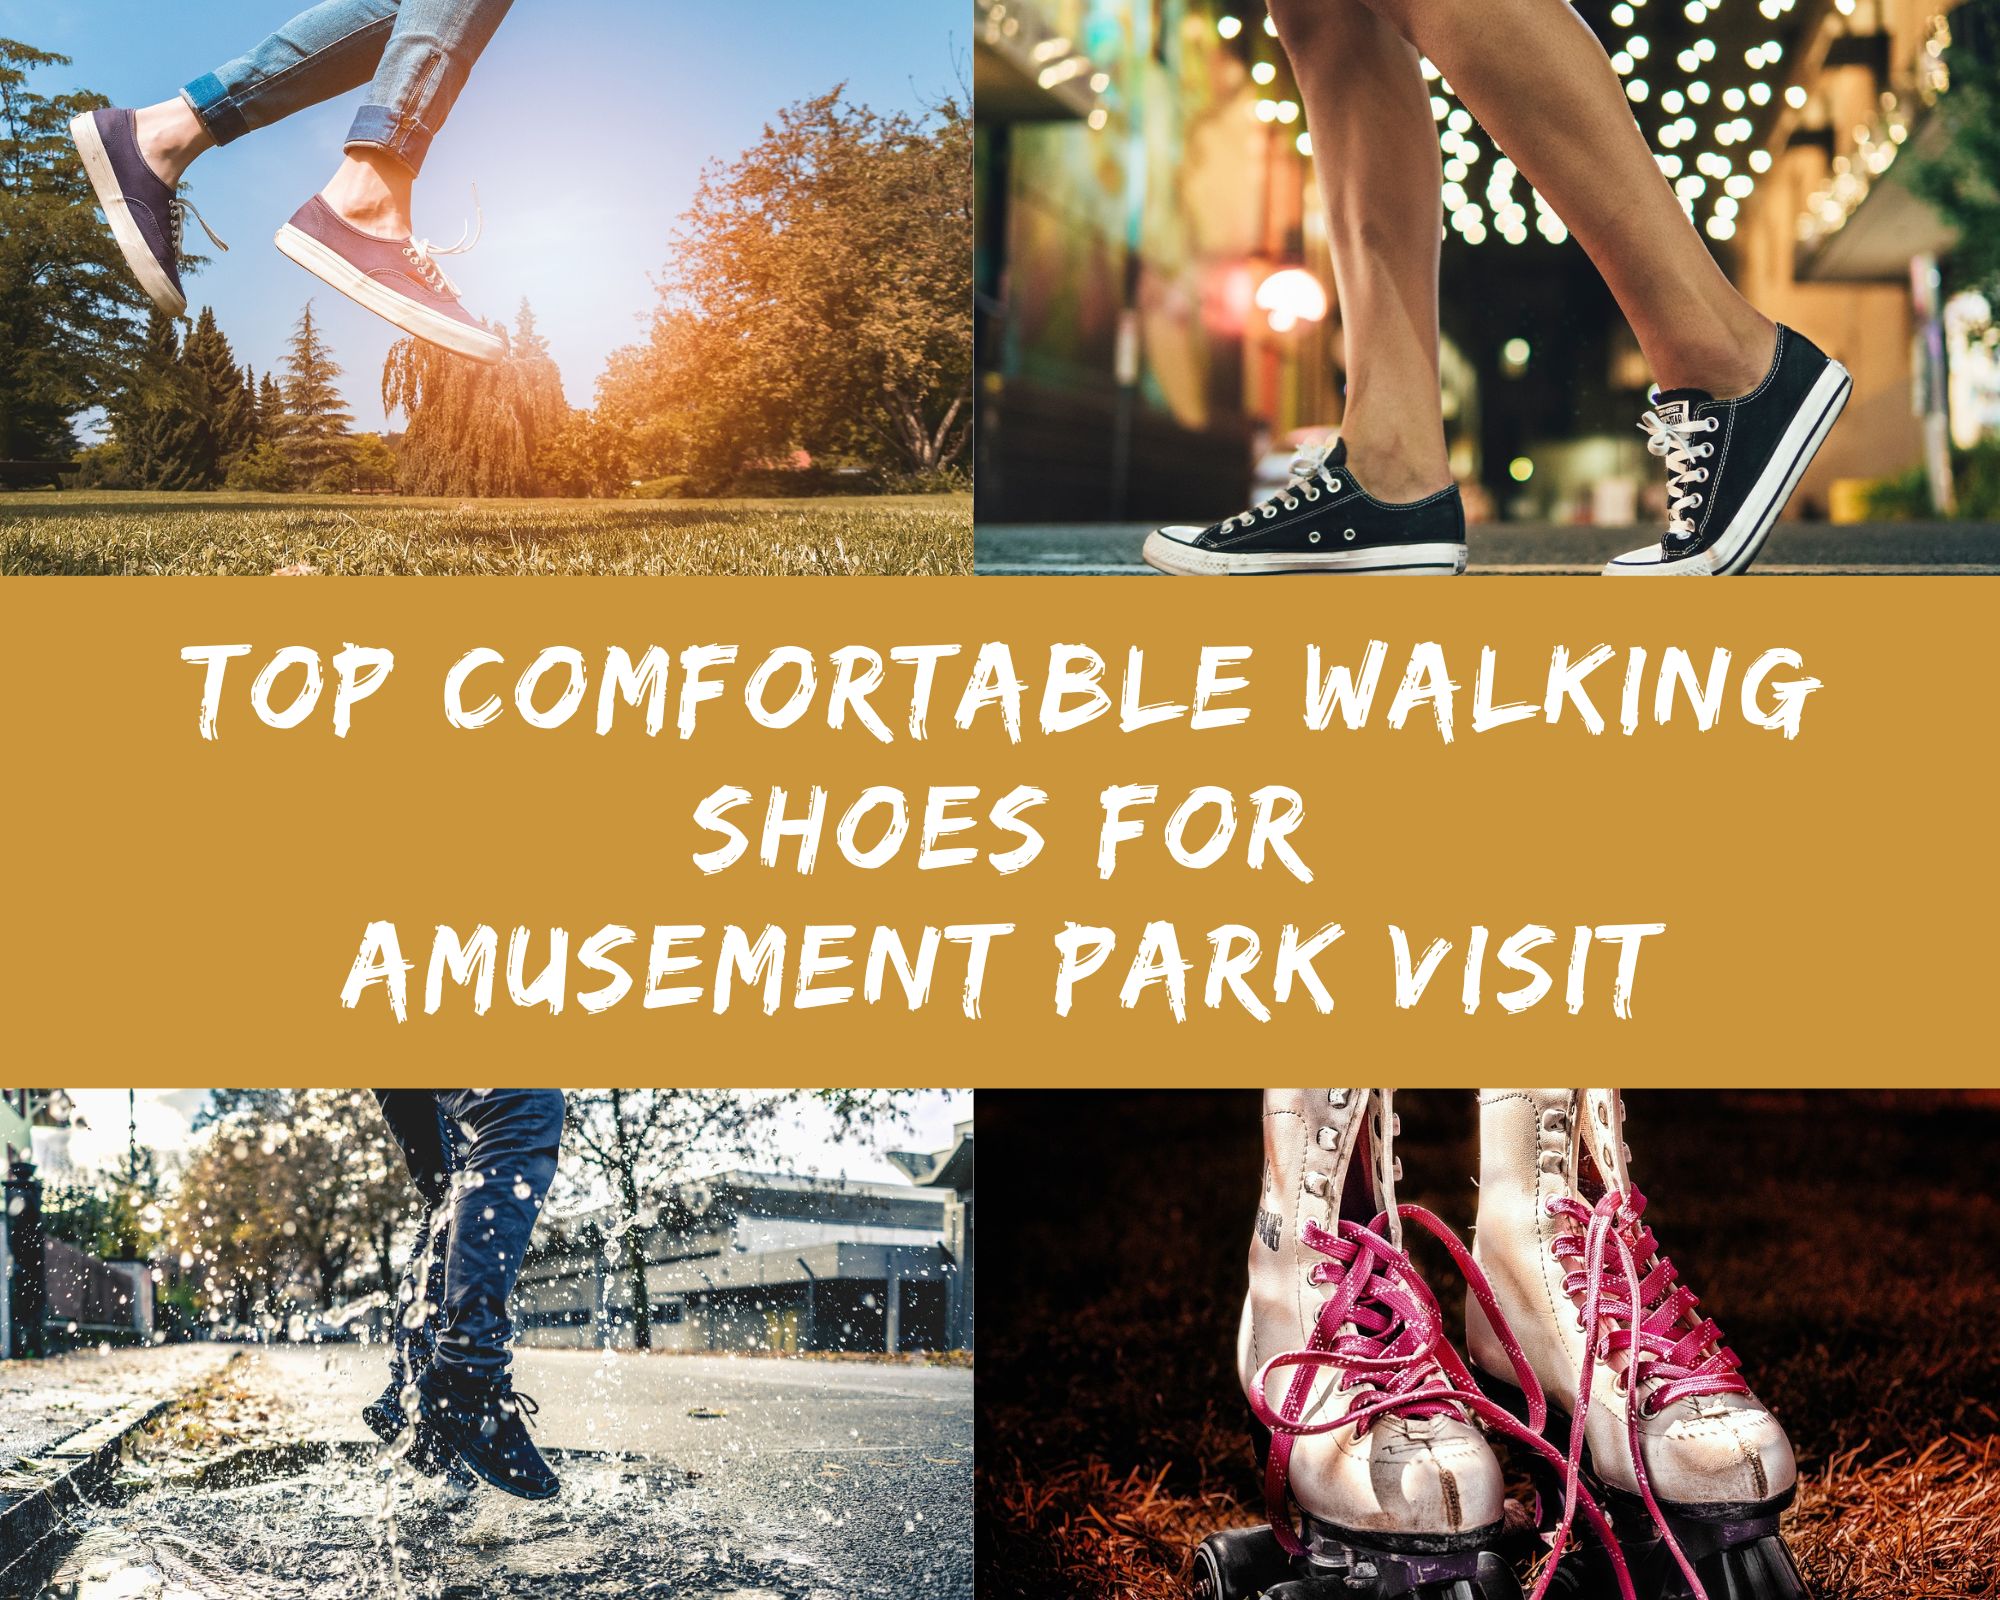 Top Comfortable Walking Shoes for Amusement Park Visit